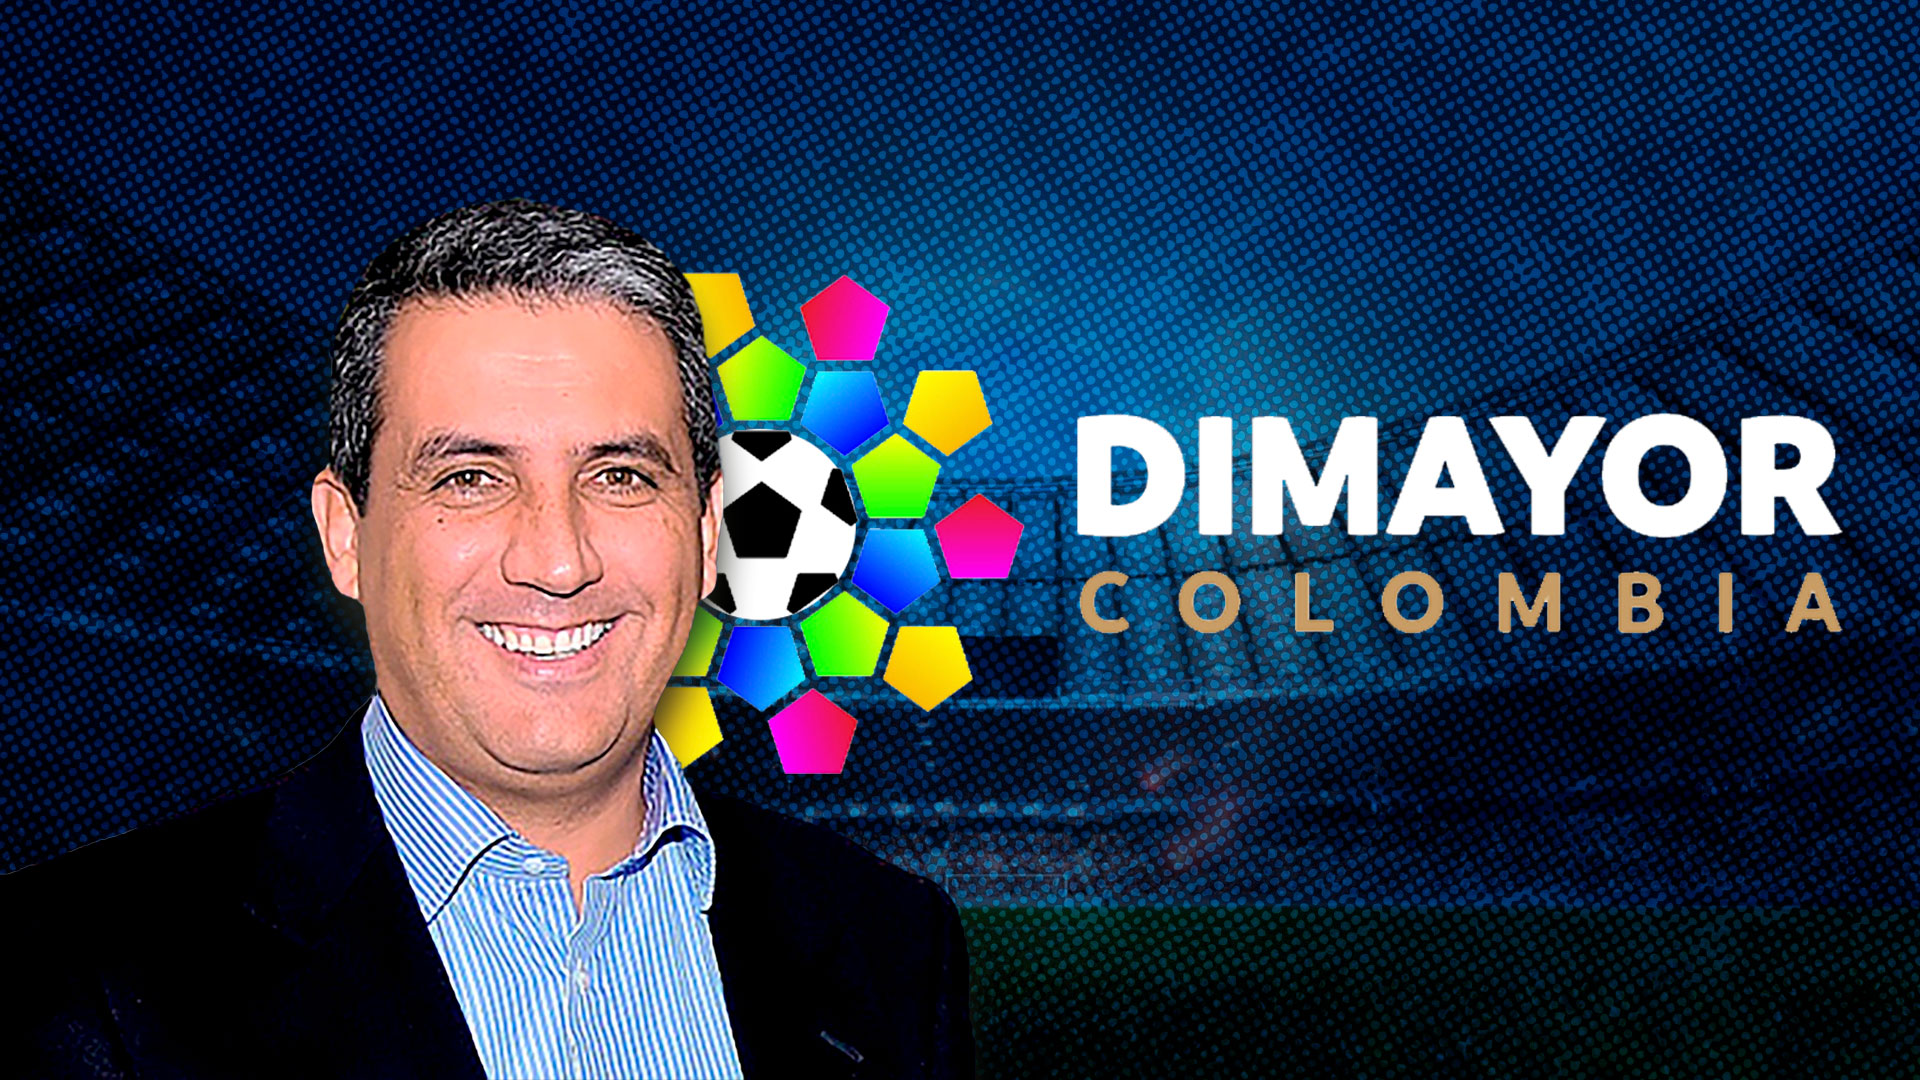 Fútbol profesional colombiano: este será el formato de la Liga en el 2023 de acuerdo con el director de la Dimayor